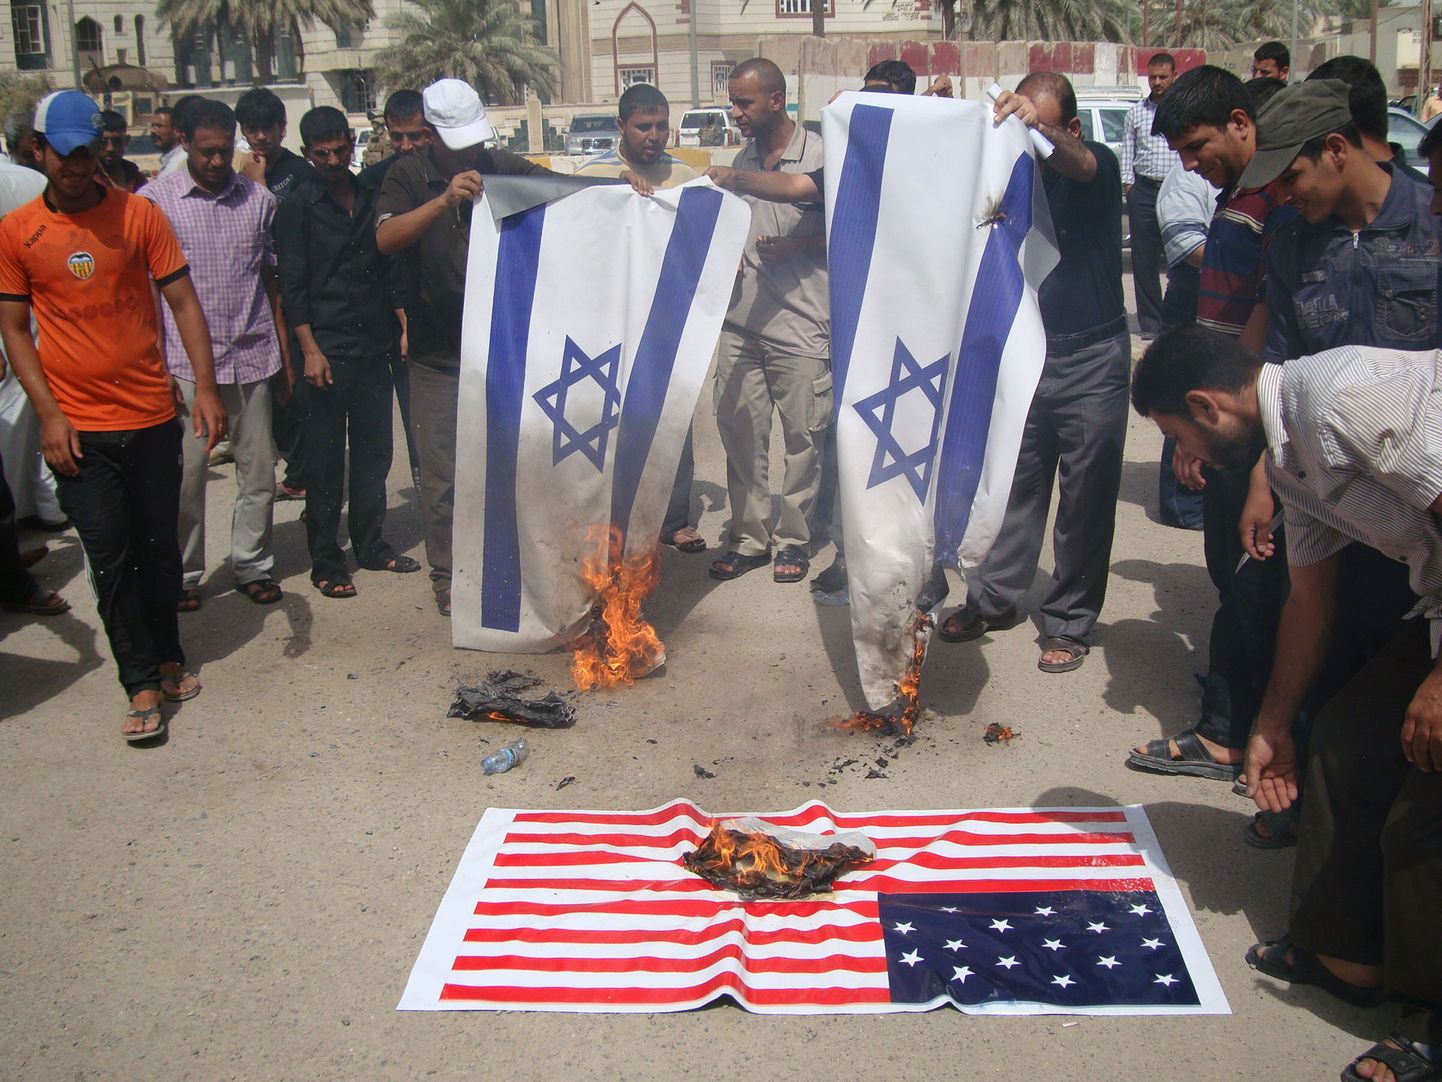 Iraagi šiiitliku vaimuliku Moqtada al-Sadri liikumise toetajad põletasid islamit naeruvääristava filmi tõttu täna Iisraeli ja USA lippe.